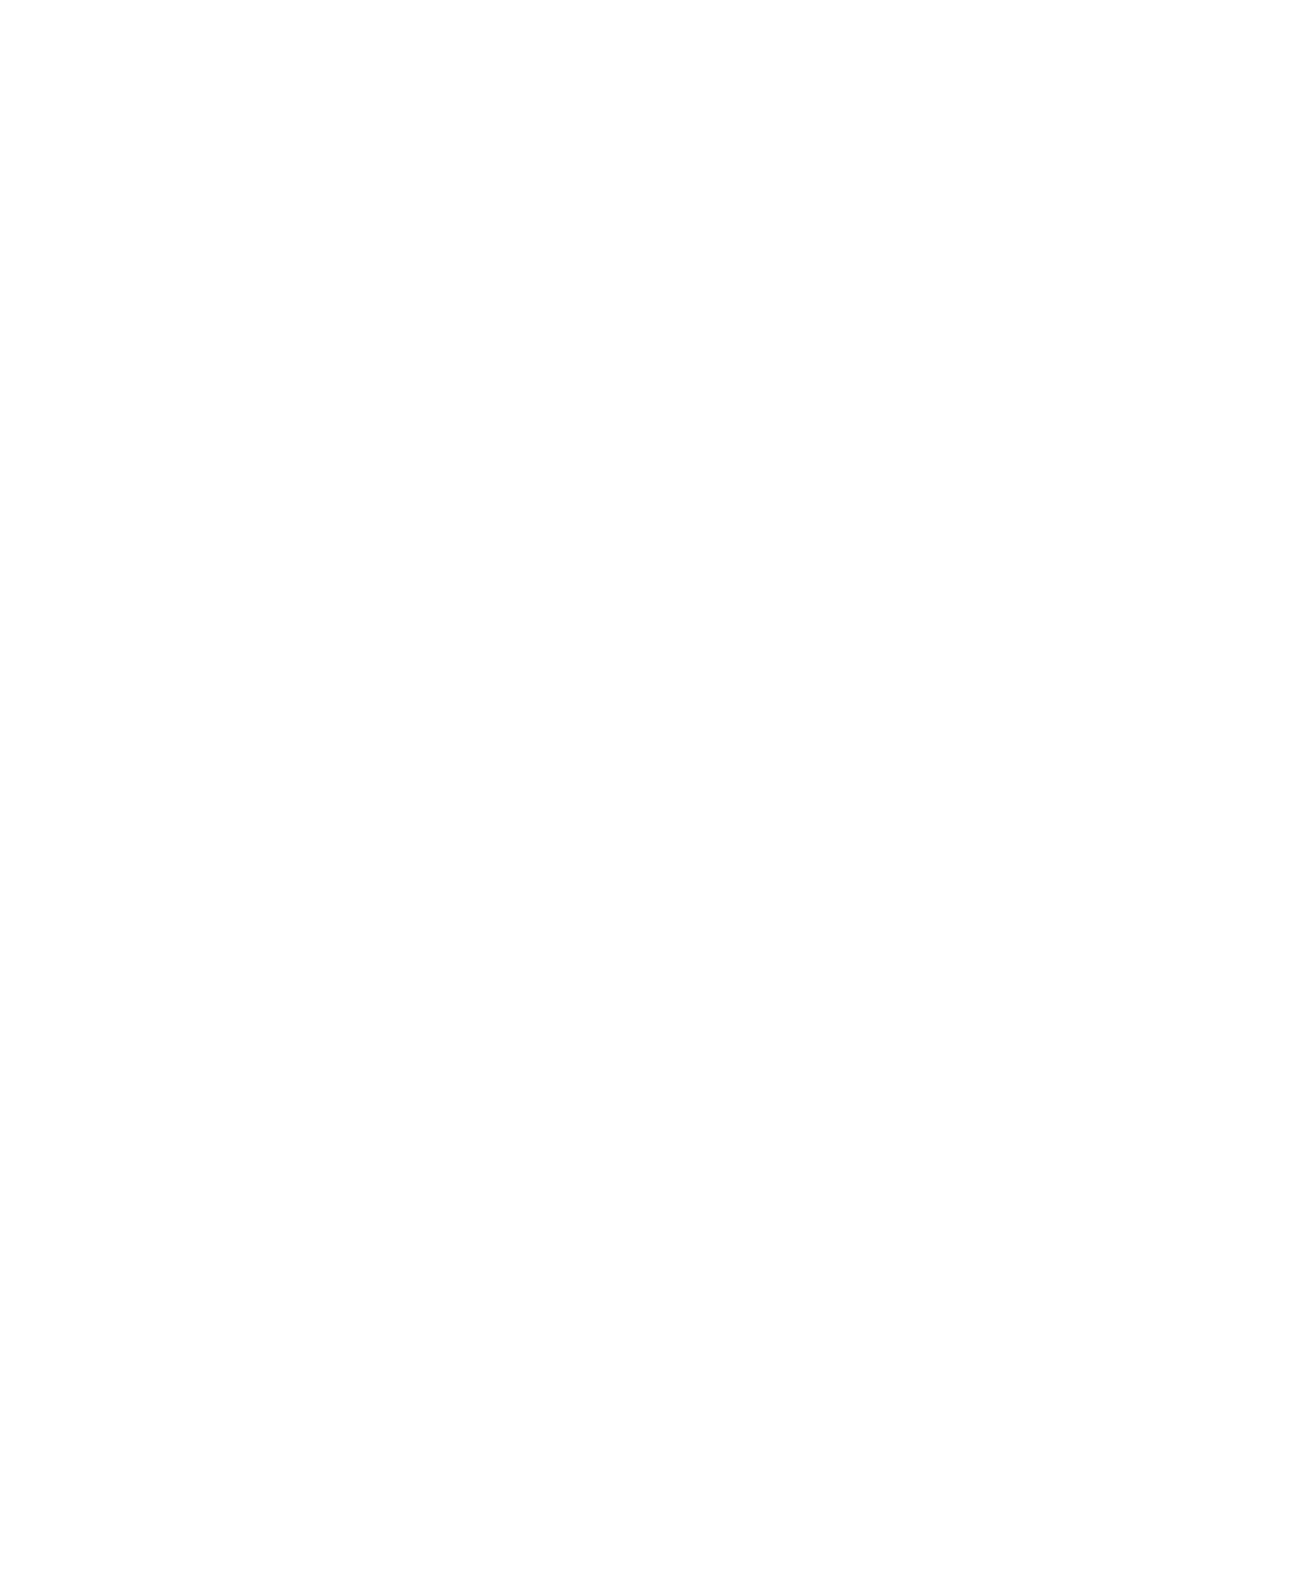 Cannes Cinéma